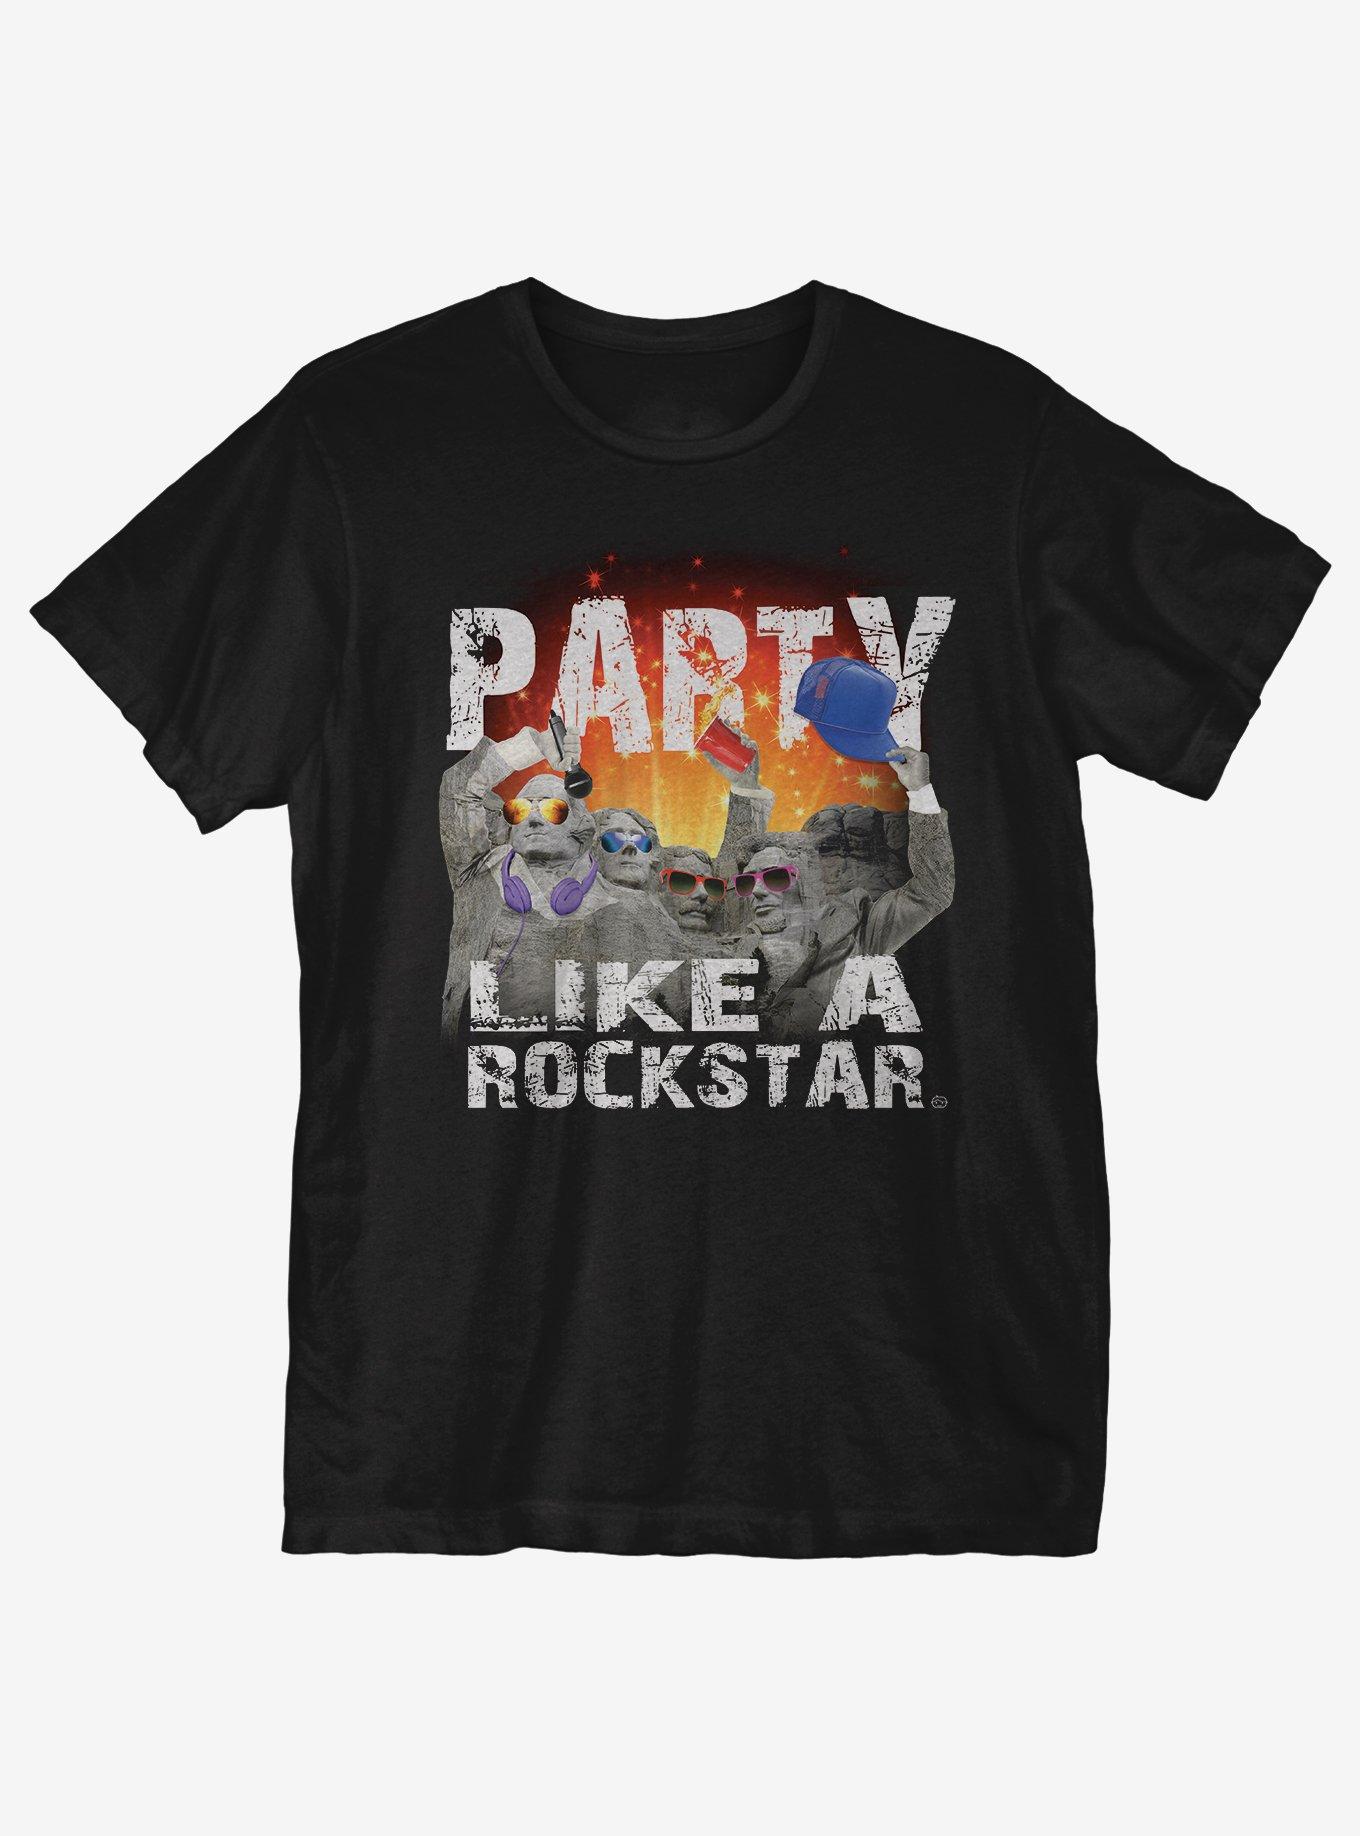 Party Like A Rockstar T-Shirt, BLACK, hi-res